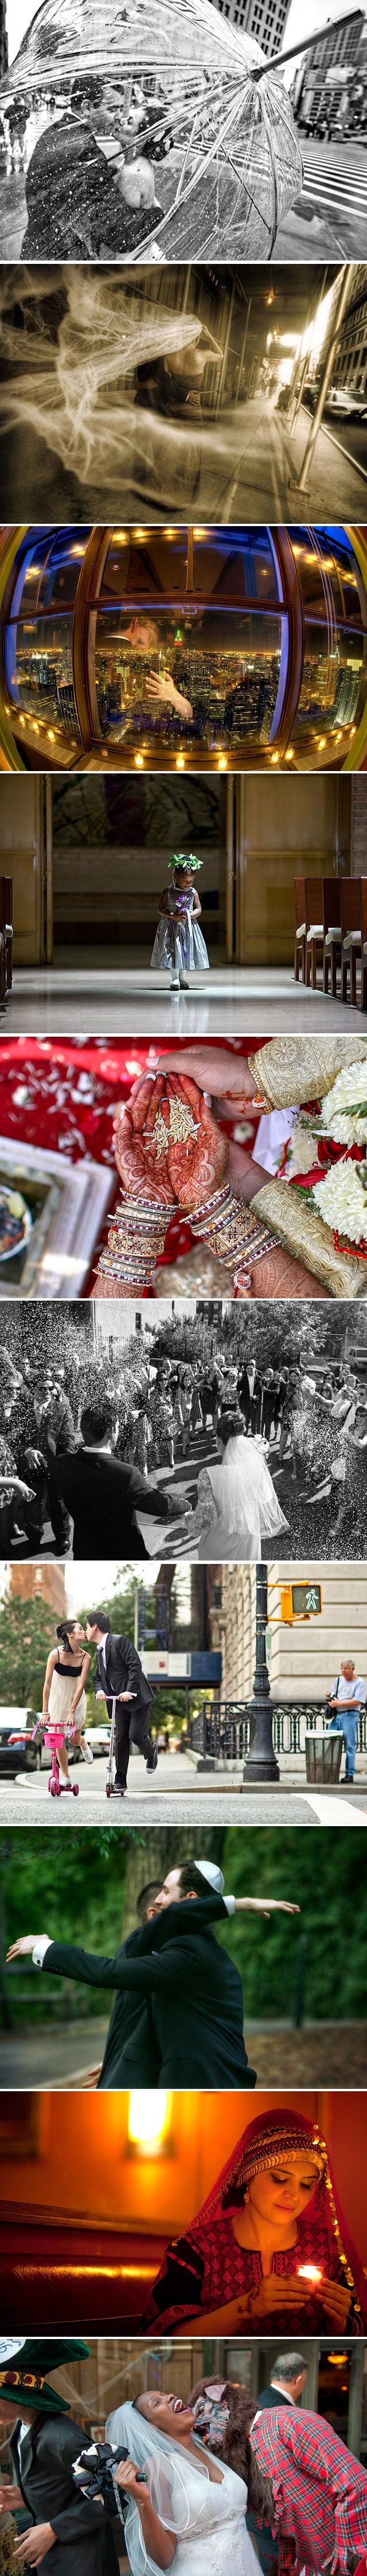 زفاف - سحر الناس حول العالم.